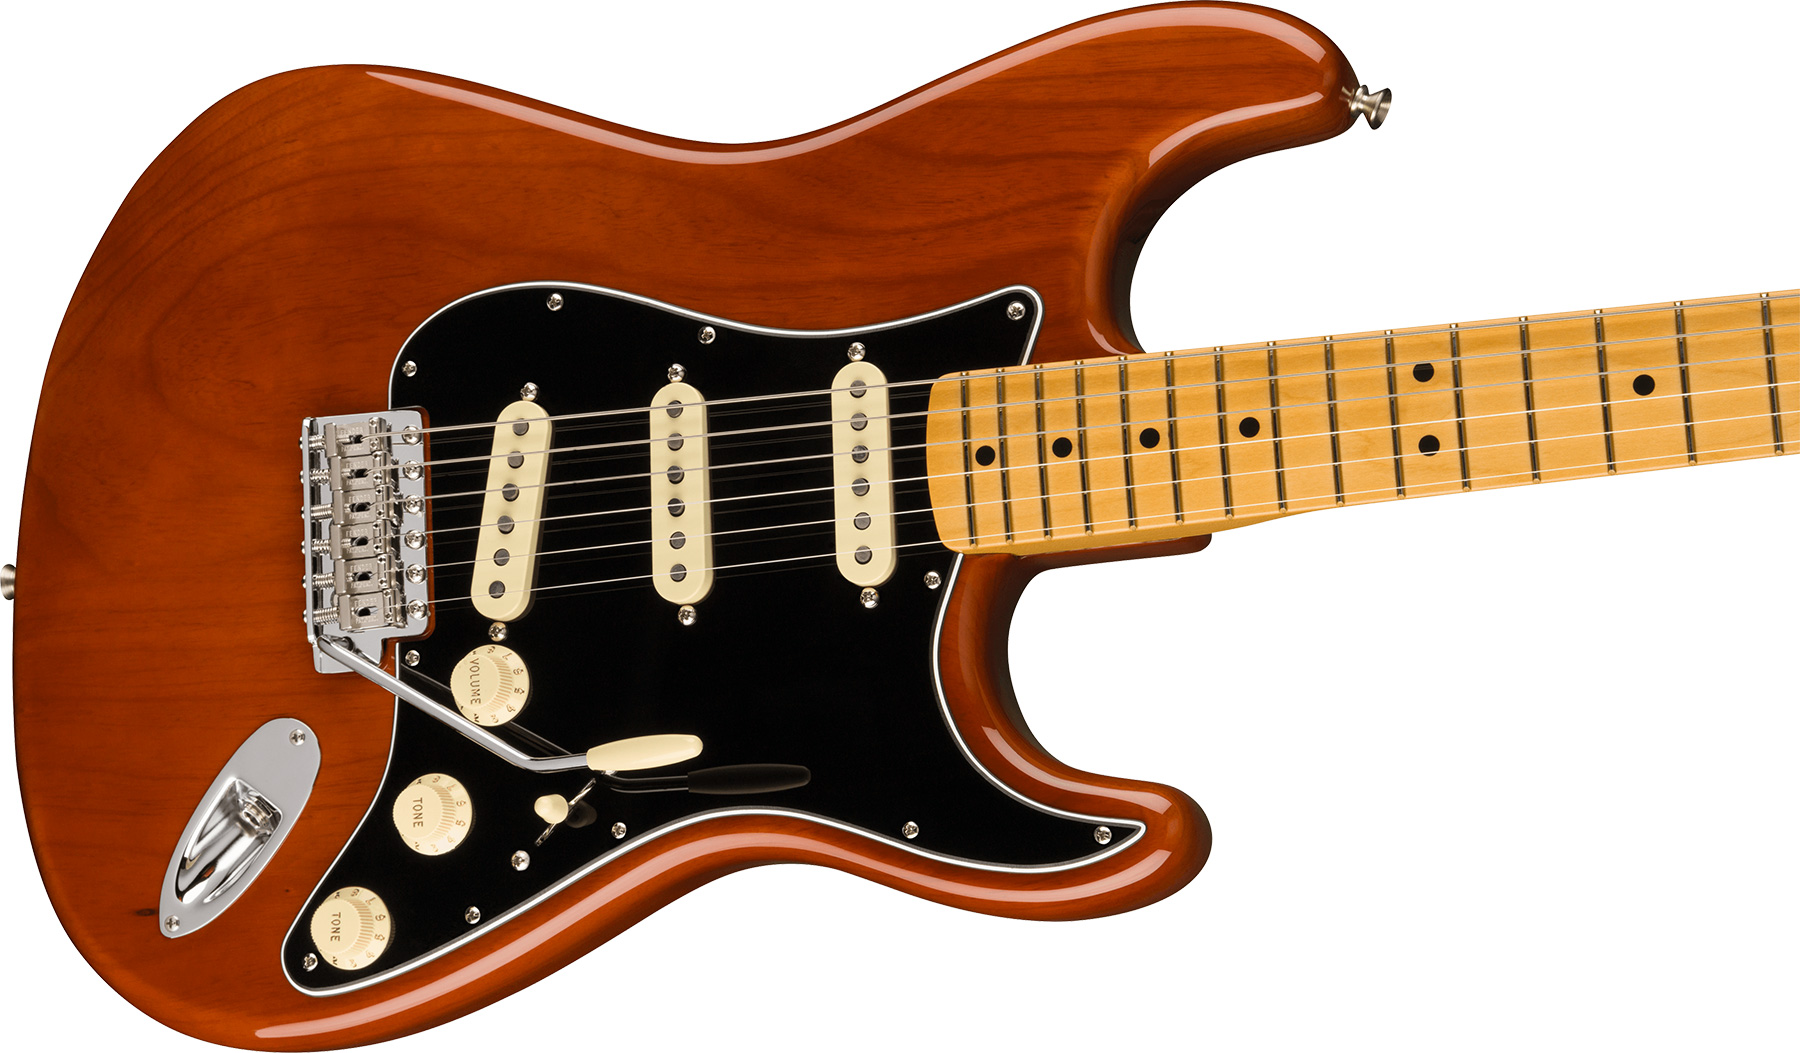 Fender Strat 1973 American Vintage Ii Usa 3s Trem Mn - Mocha - E-Gitarre in Str-Form - Variation 2